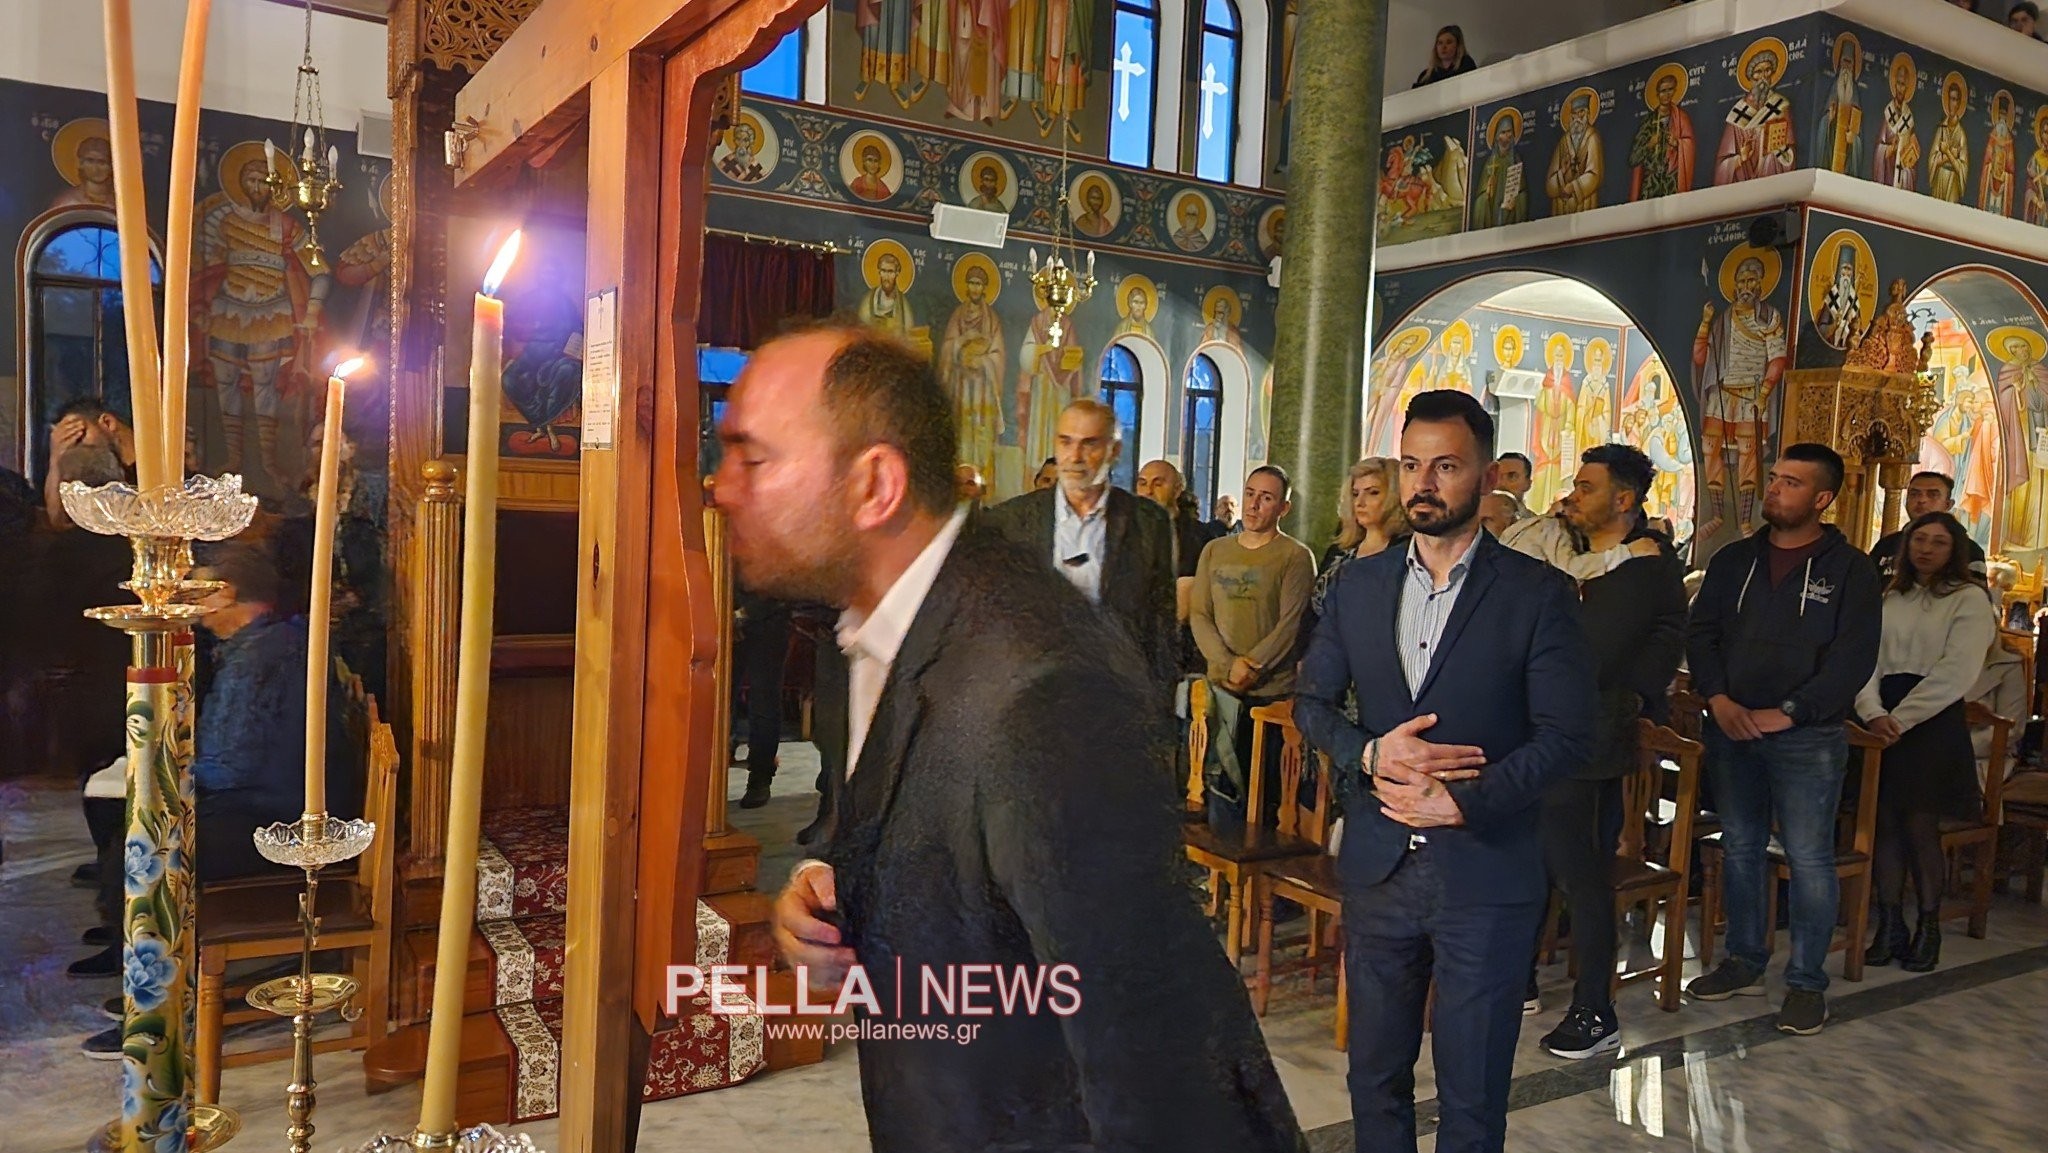 Ιερός Ναός Αγίου Αντώνιου Αριδαίας: Παρούσα η δημοτική αρχή και ο βουλευτής Λάκης Βασιλειάδης